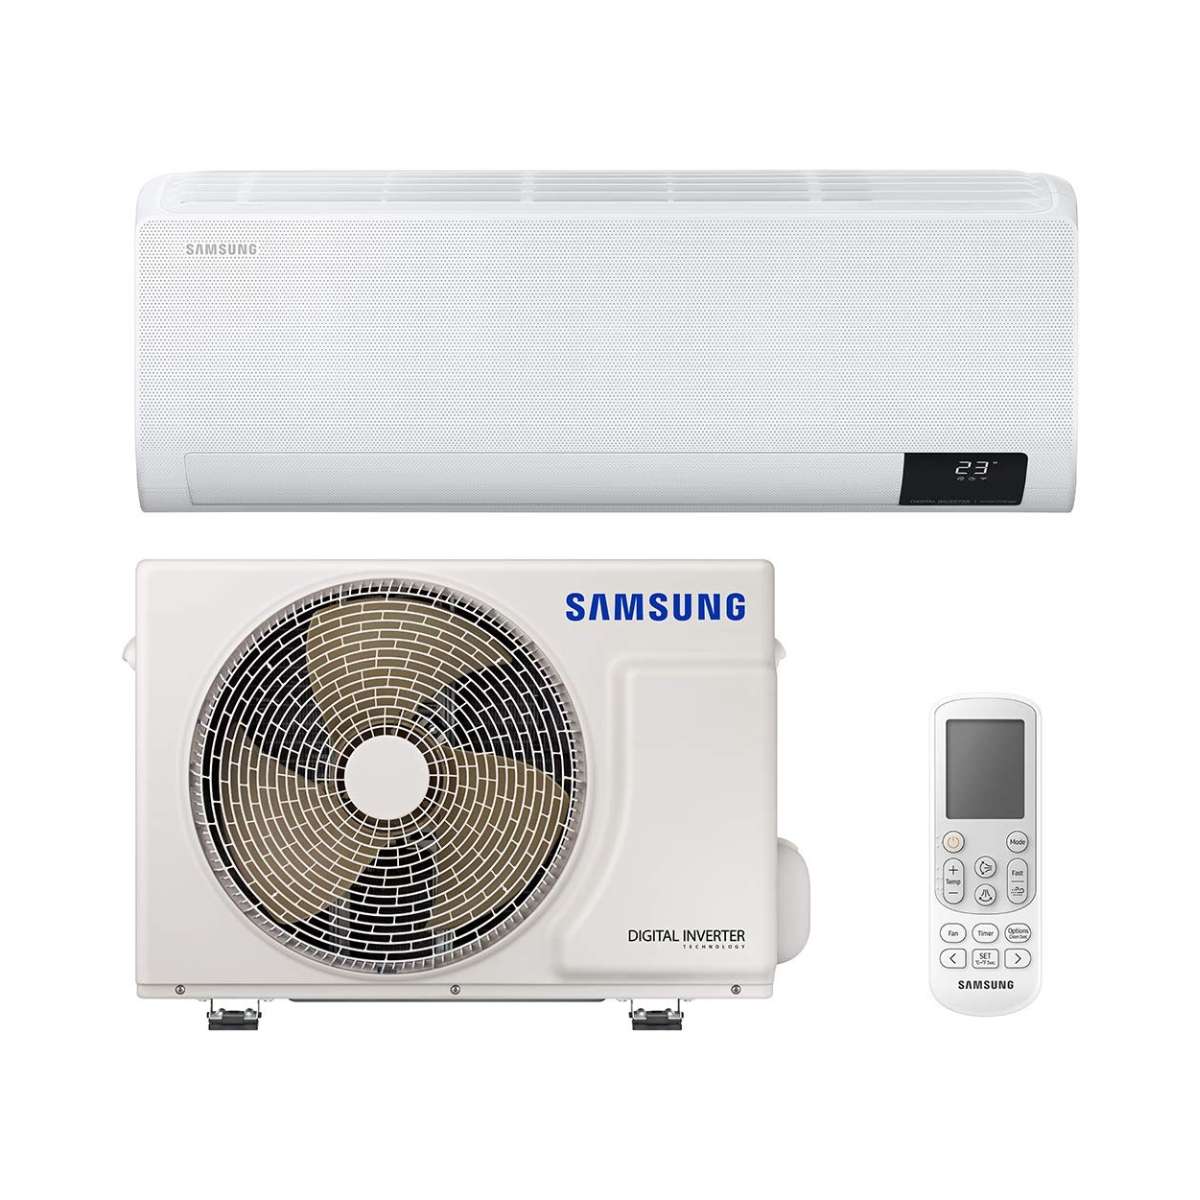 Split klimaanlage Samsung Wind Free Comfort F-AR18NXT 5,0 kW 17000 BTU mit der Referenz F-AR18NXT von der Marke SAMSUNG